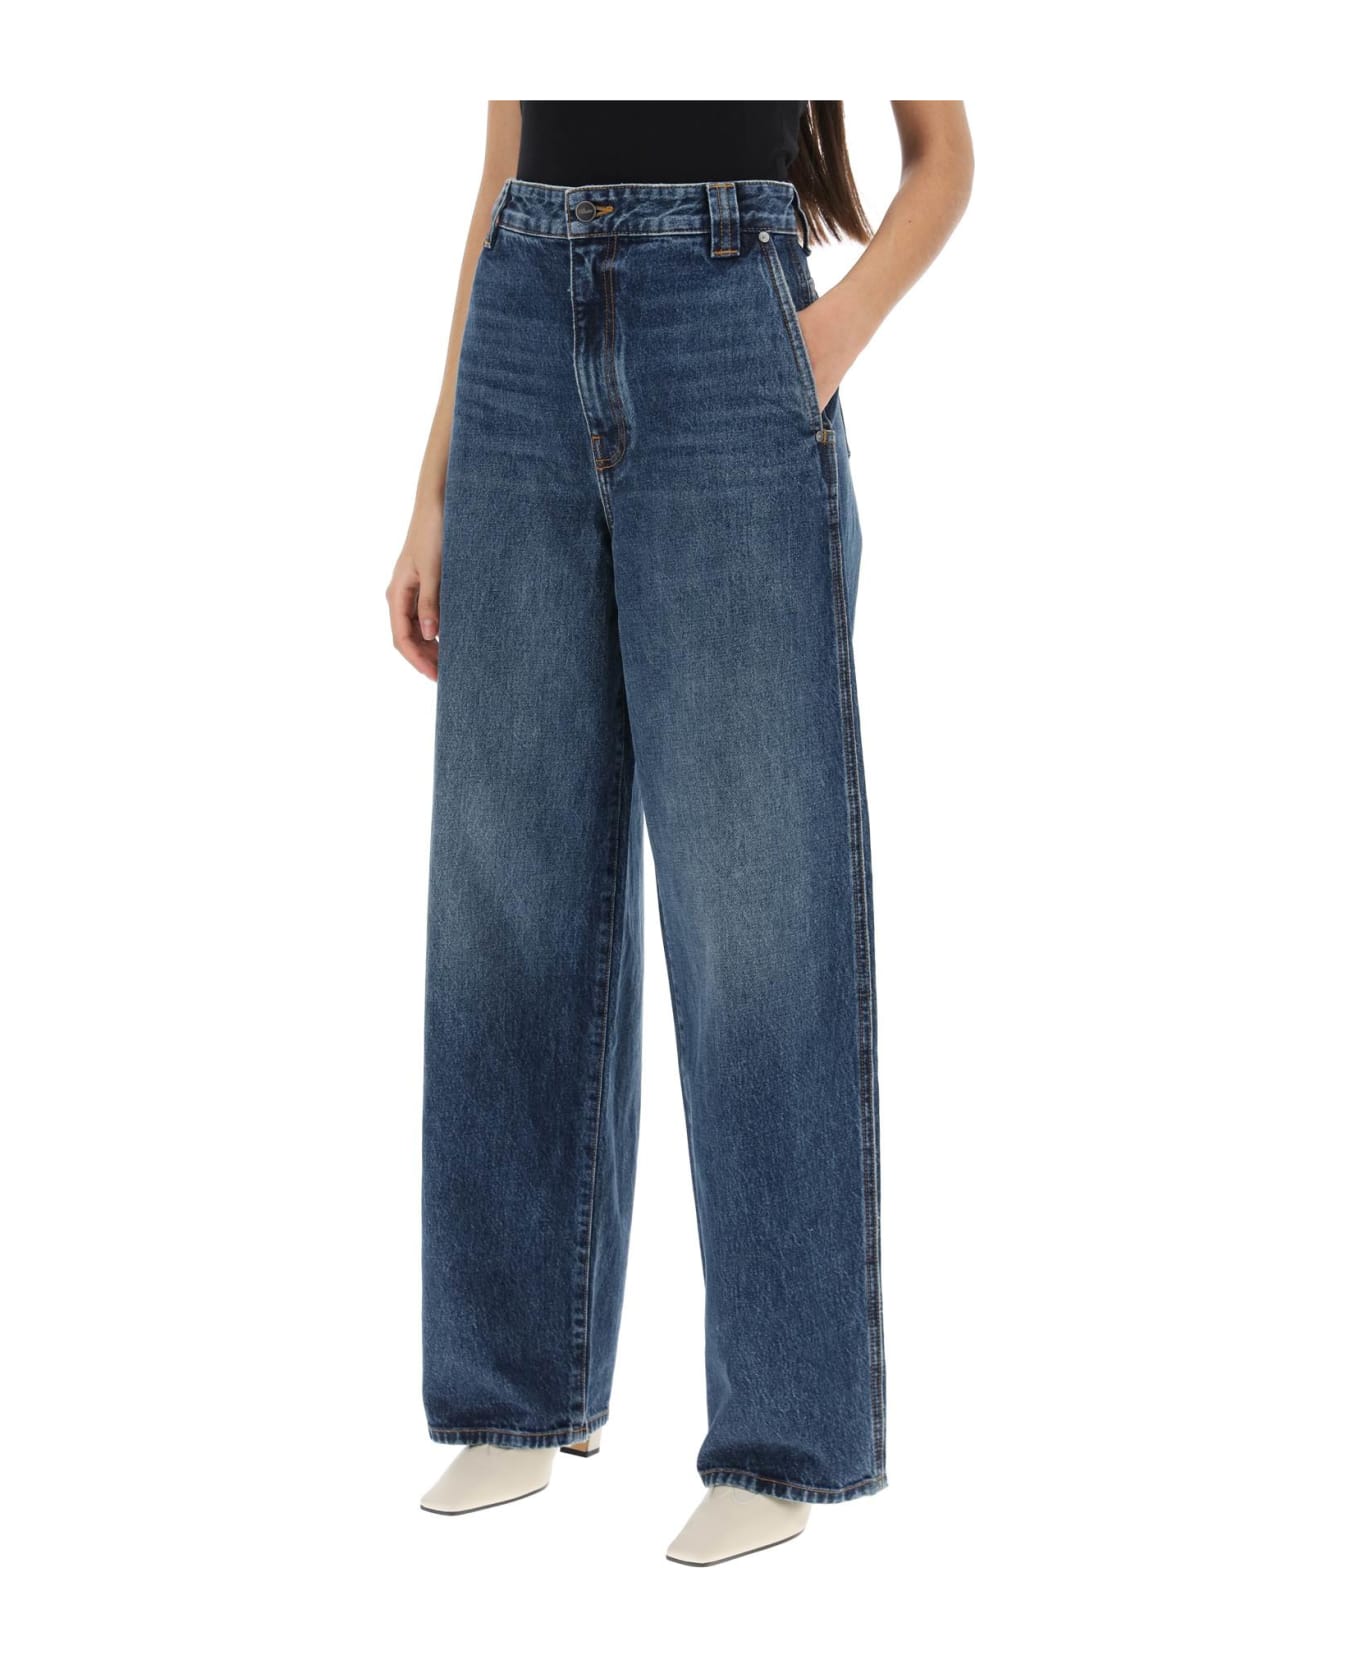 Khaite 'bacall' Blue Cotton Jeans - Archer